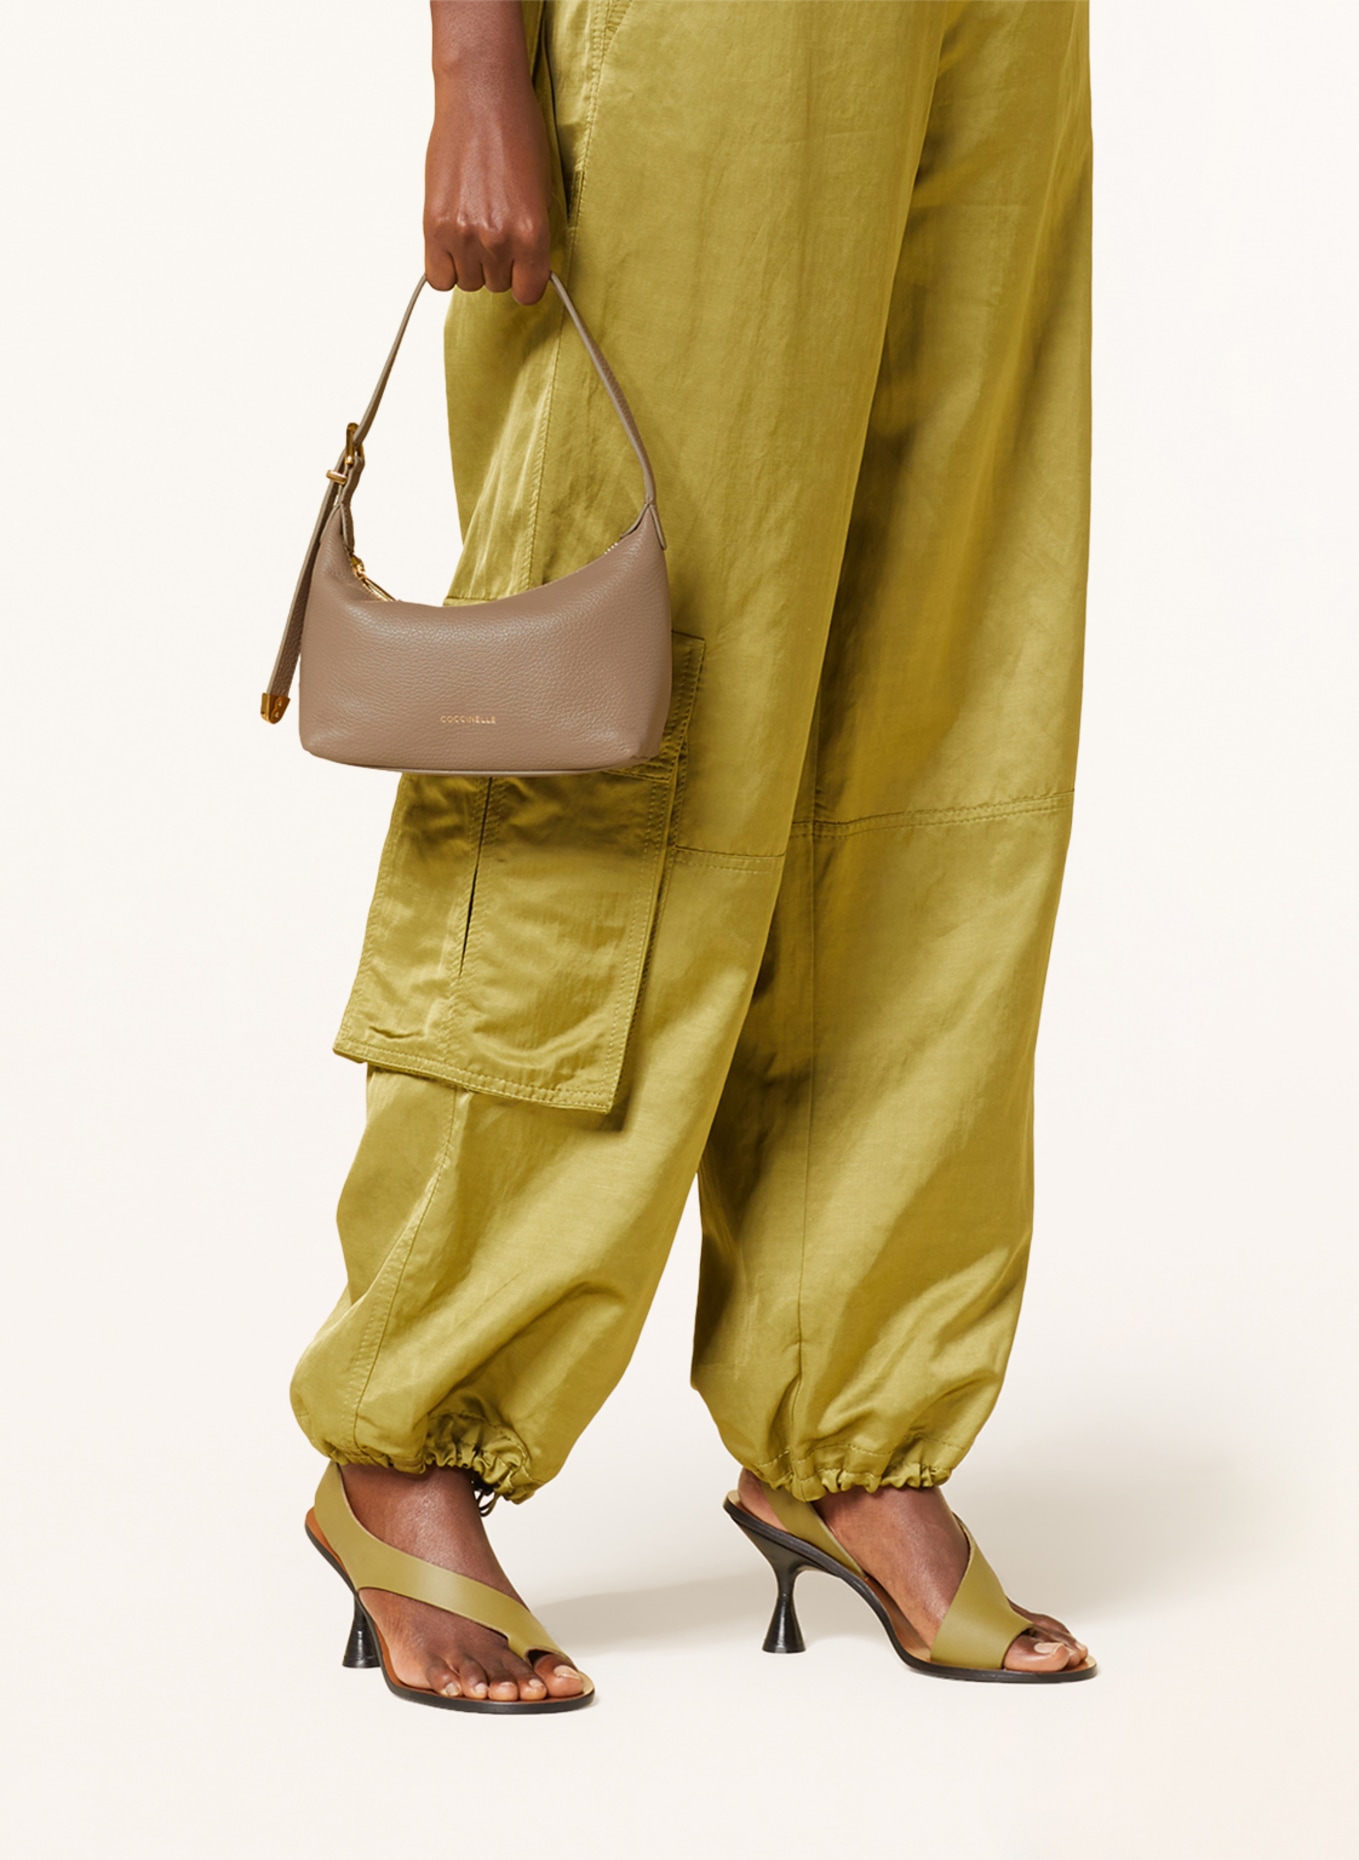 COCCINELLE Handtasche, Farbe: TAUPE (Bild 4)